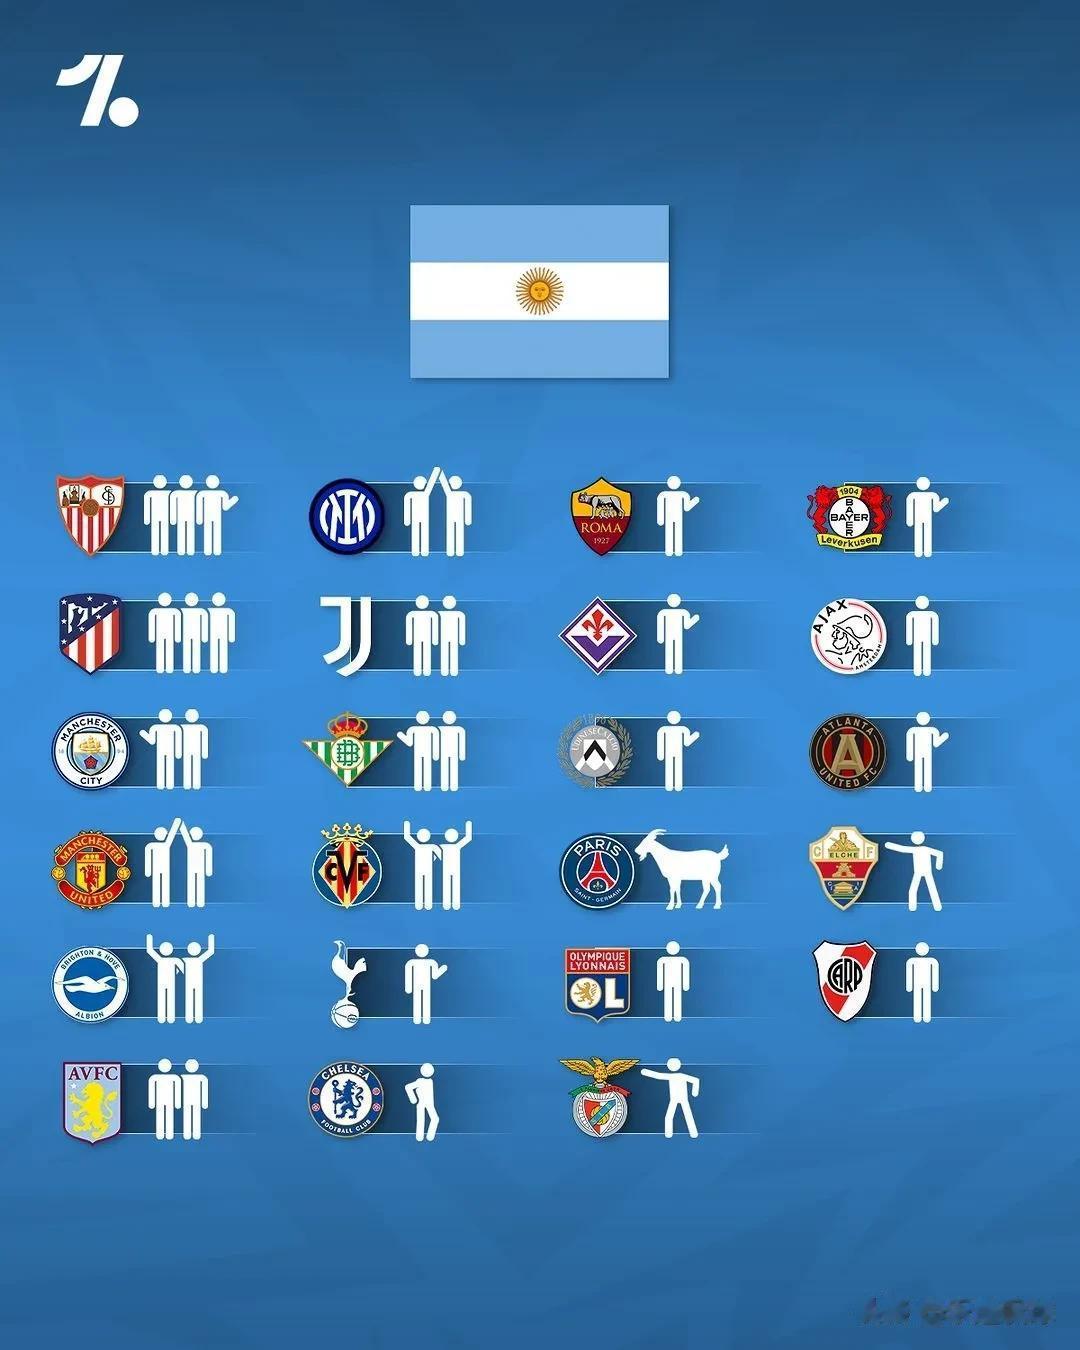 几支豪门国家队的球员的所属俱乐部构成，世界冠军阿根廷是这几支球队中最分散的，球员